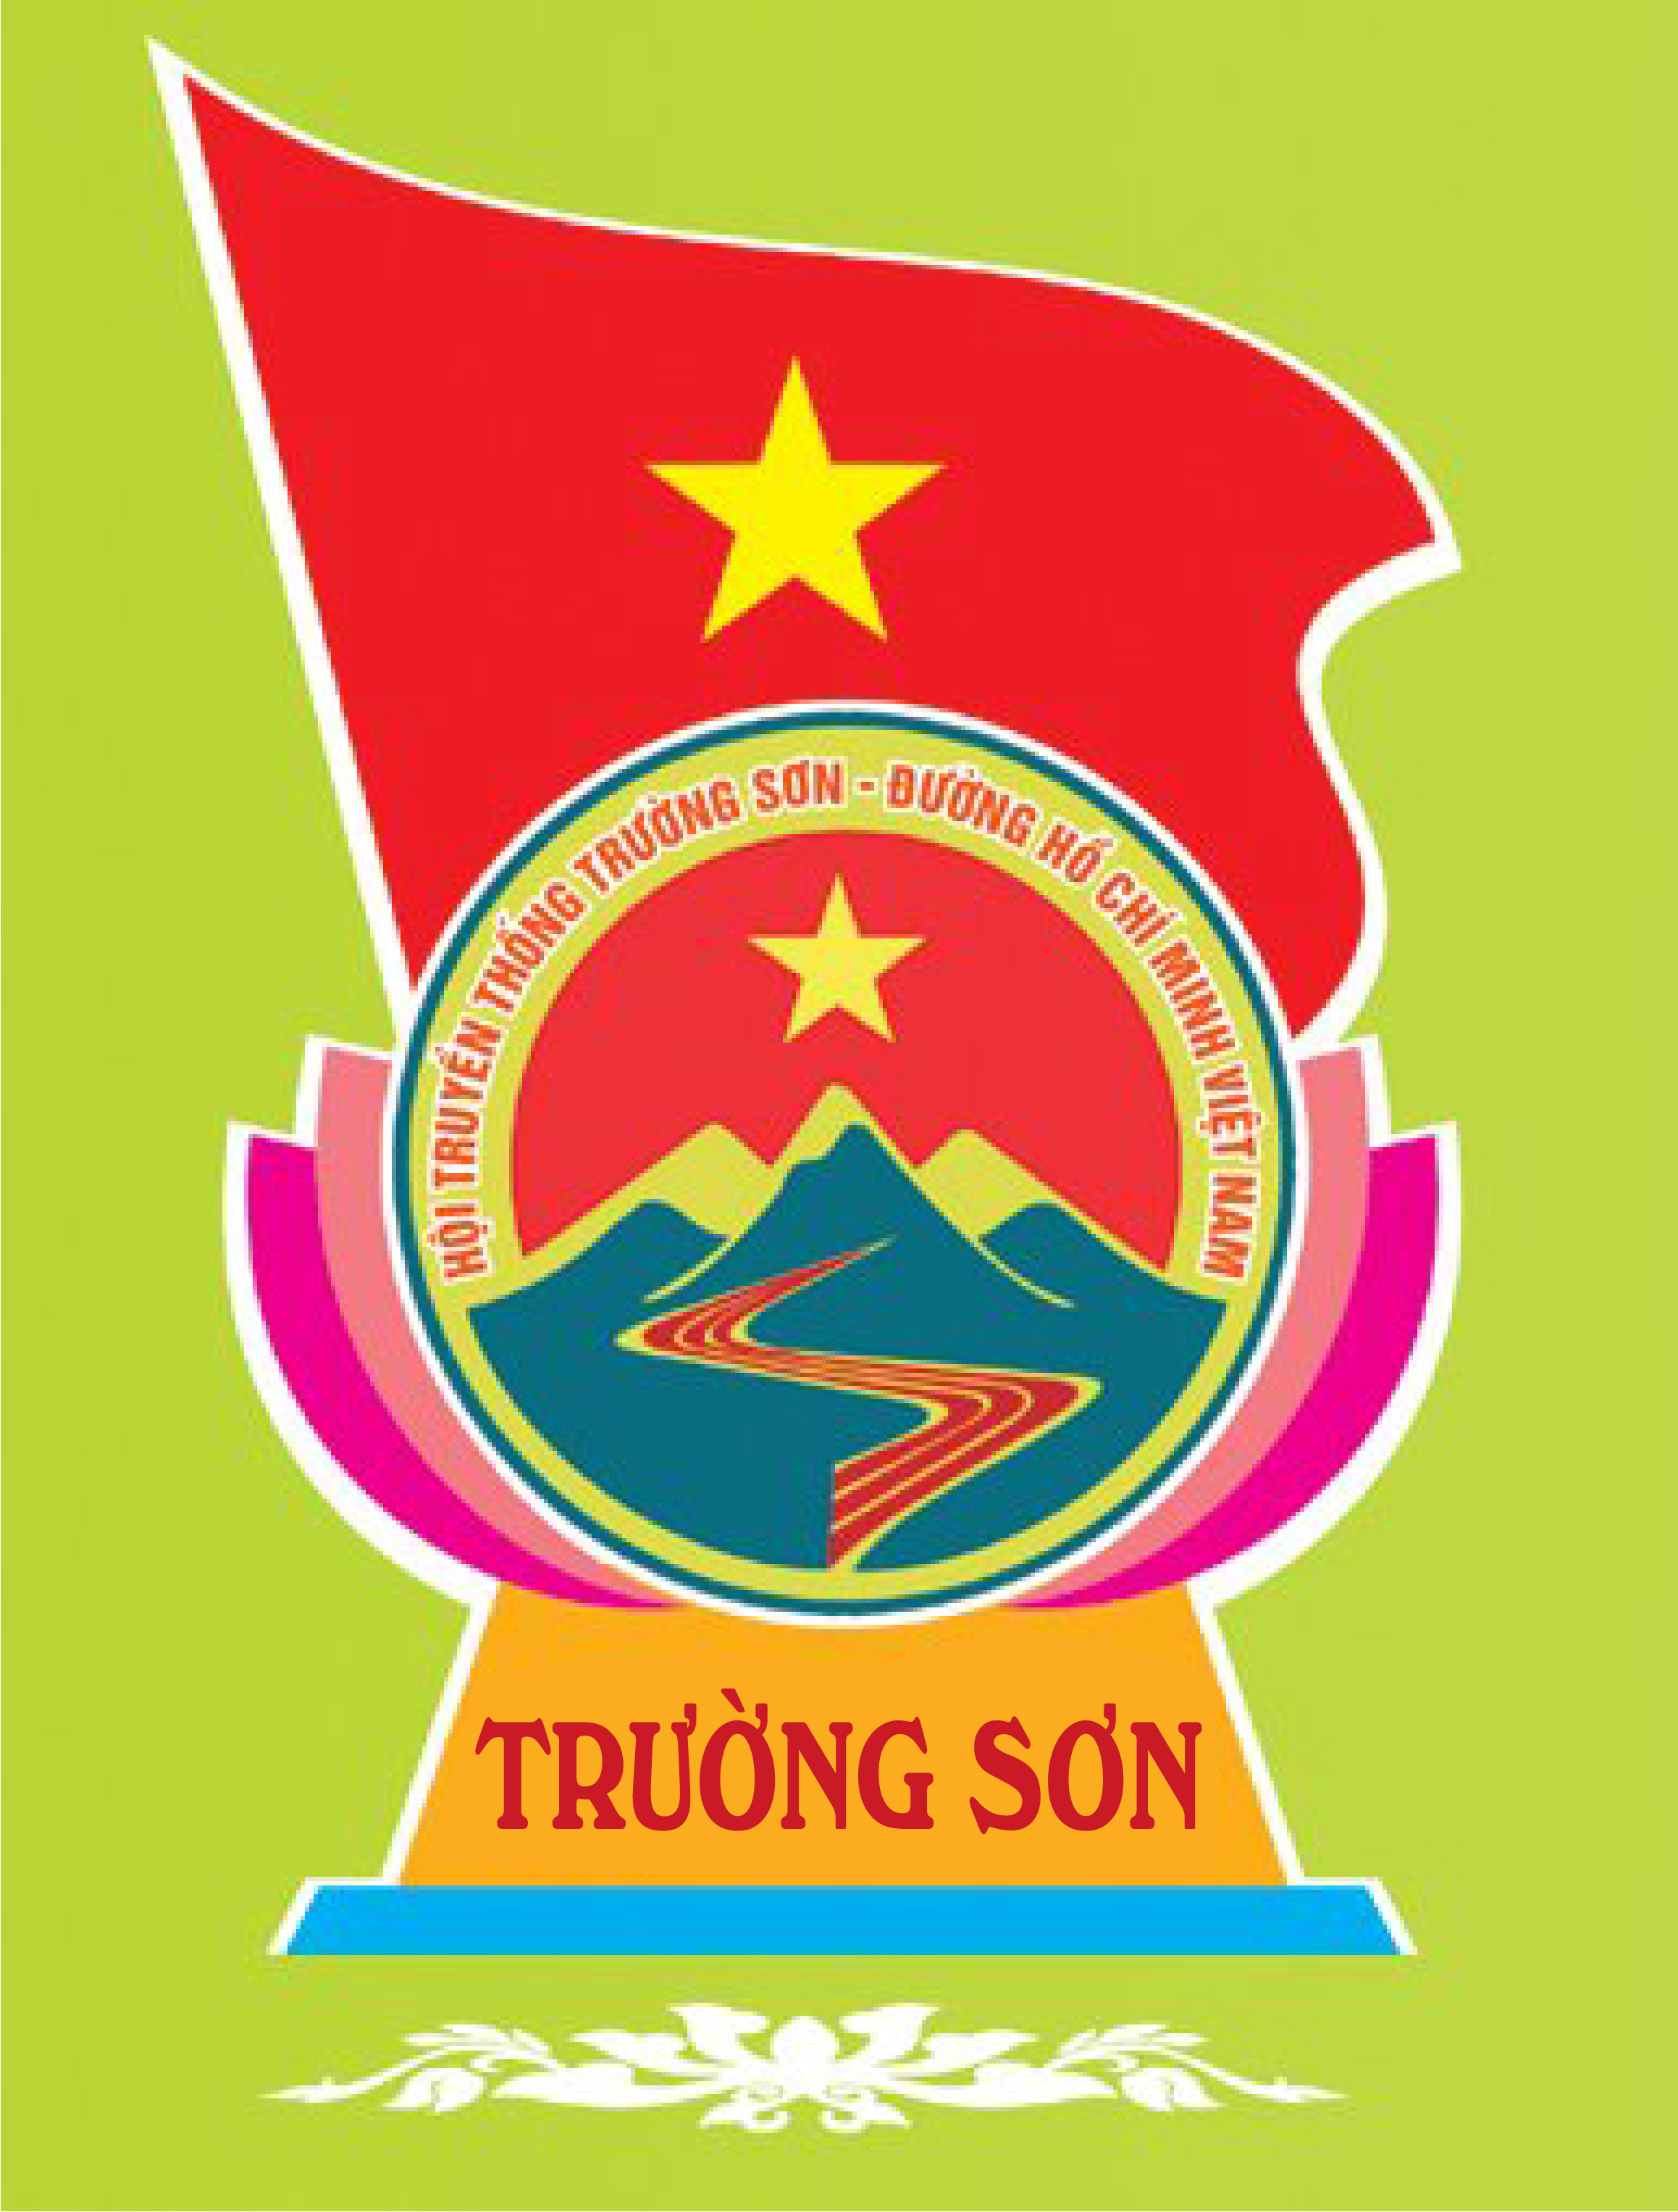 Hội Trường Sơn huyện Phú Bình tỉnh Thái Nguyên với công tác xây dựng Hội vững mạnh